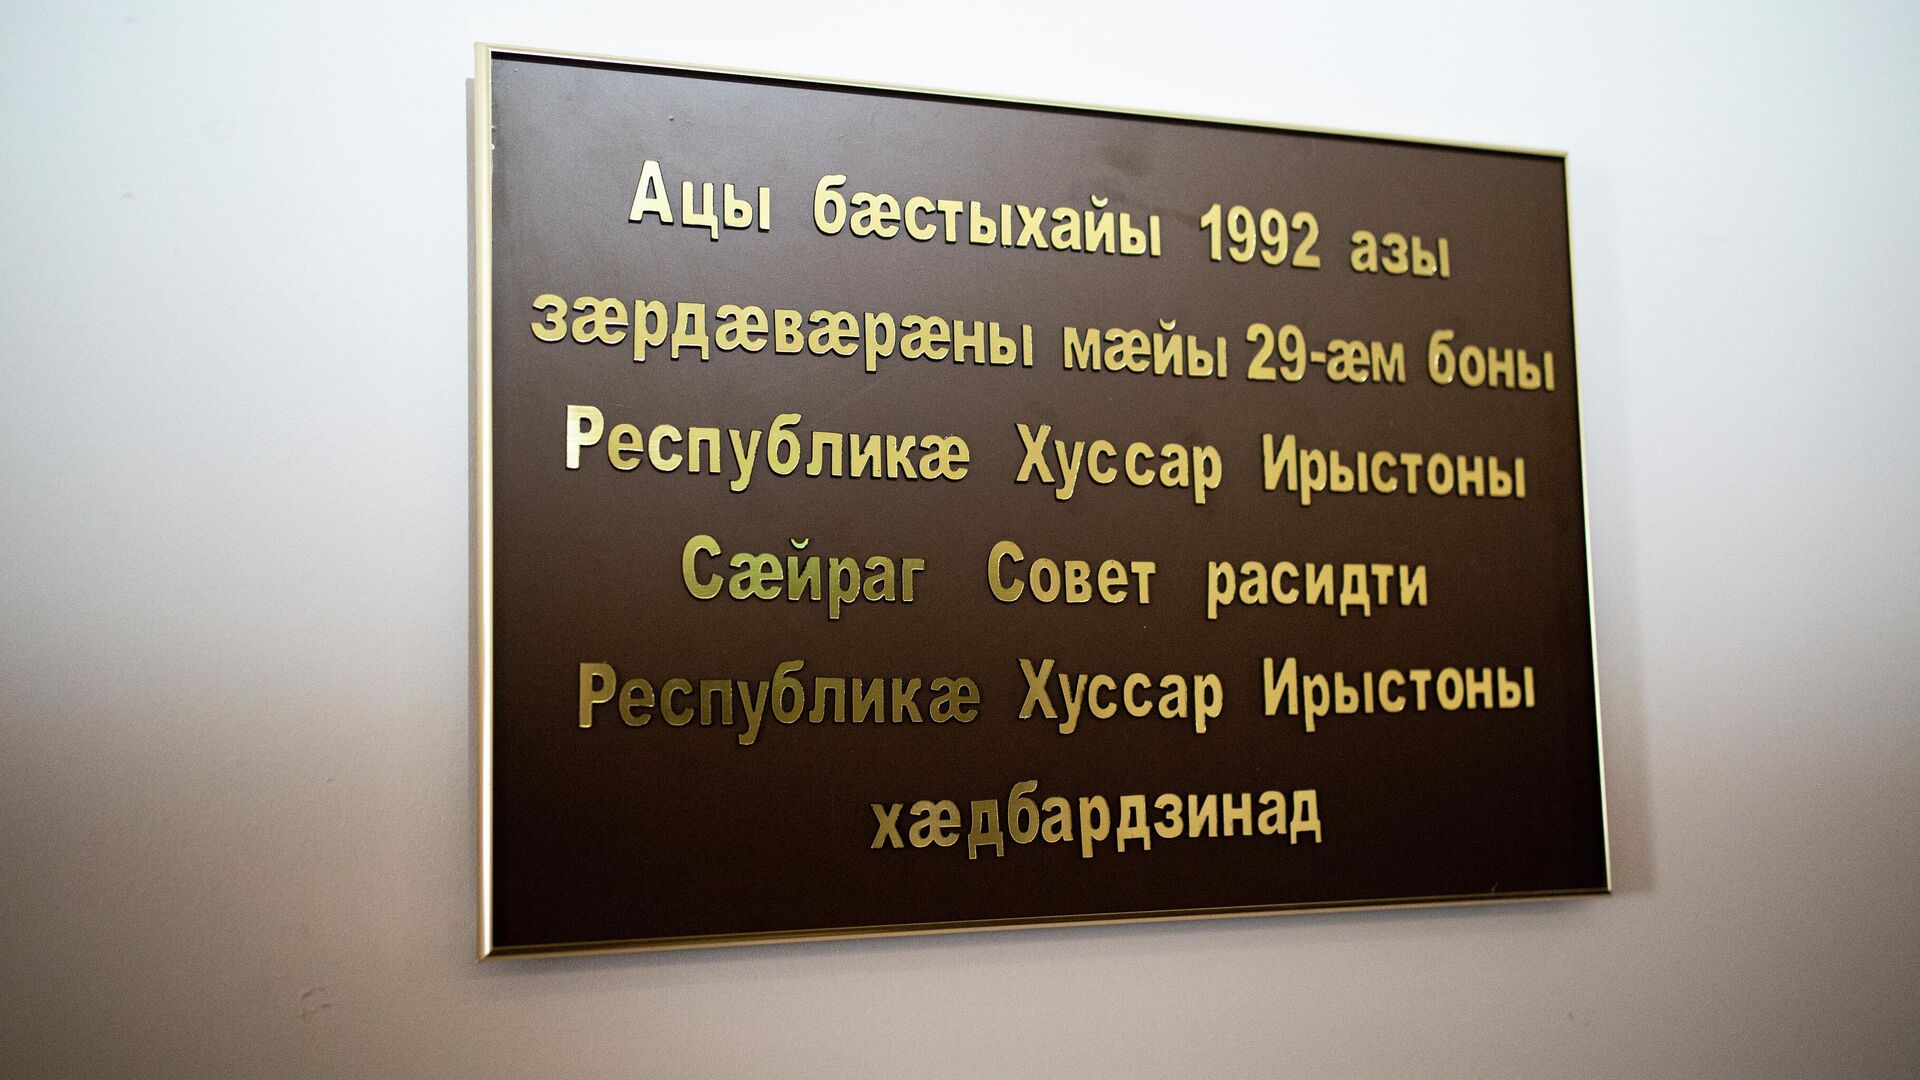 Мемориальная доска посвященная 30-летию принятия Акта о провозглашении независимости РЮО - Sputnik Хуссар Ирыстон, 1920, 31.05.2022